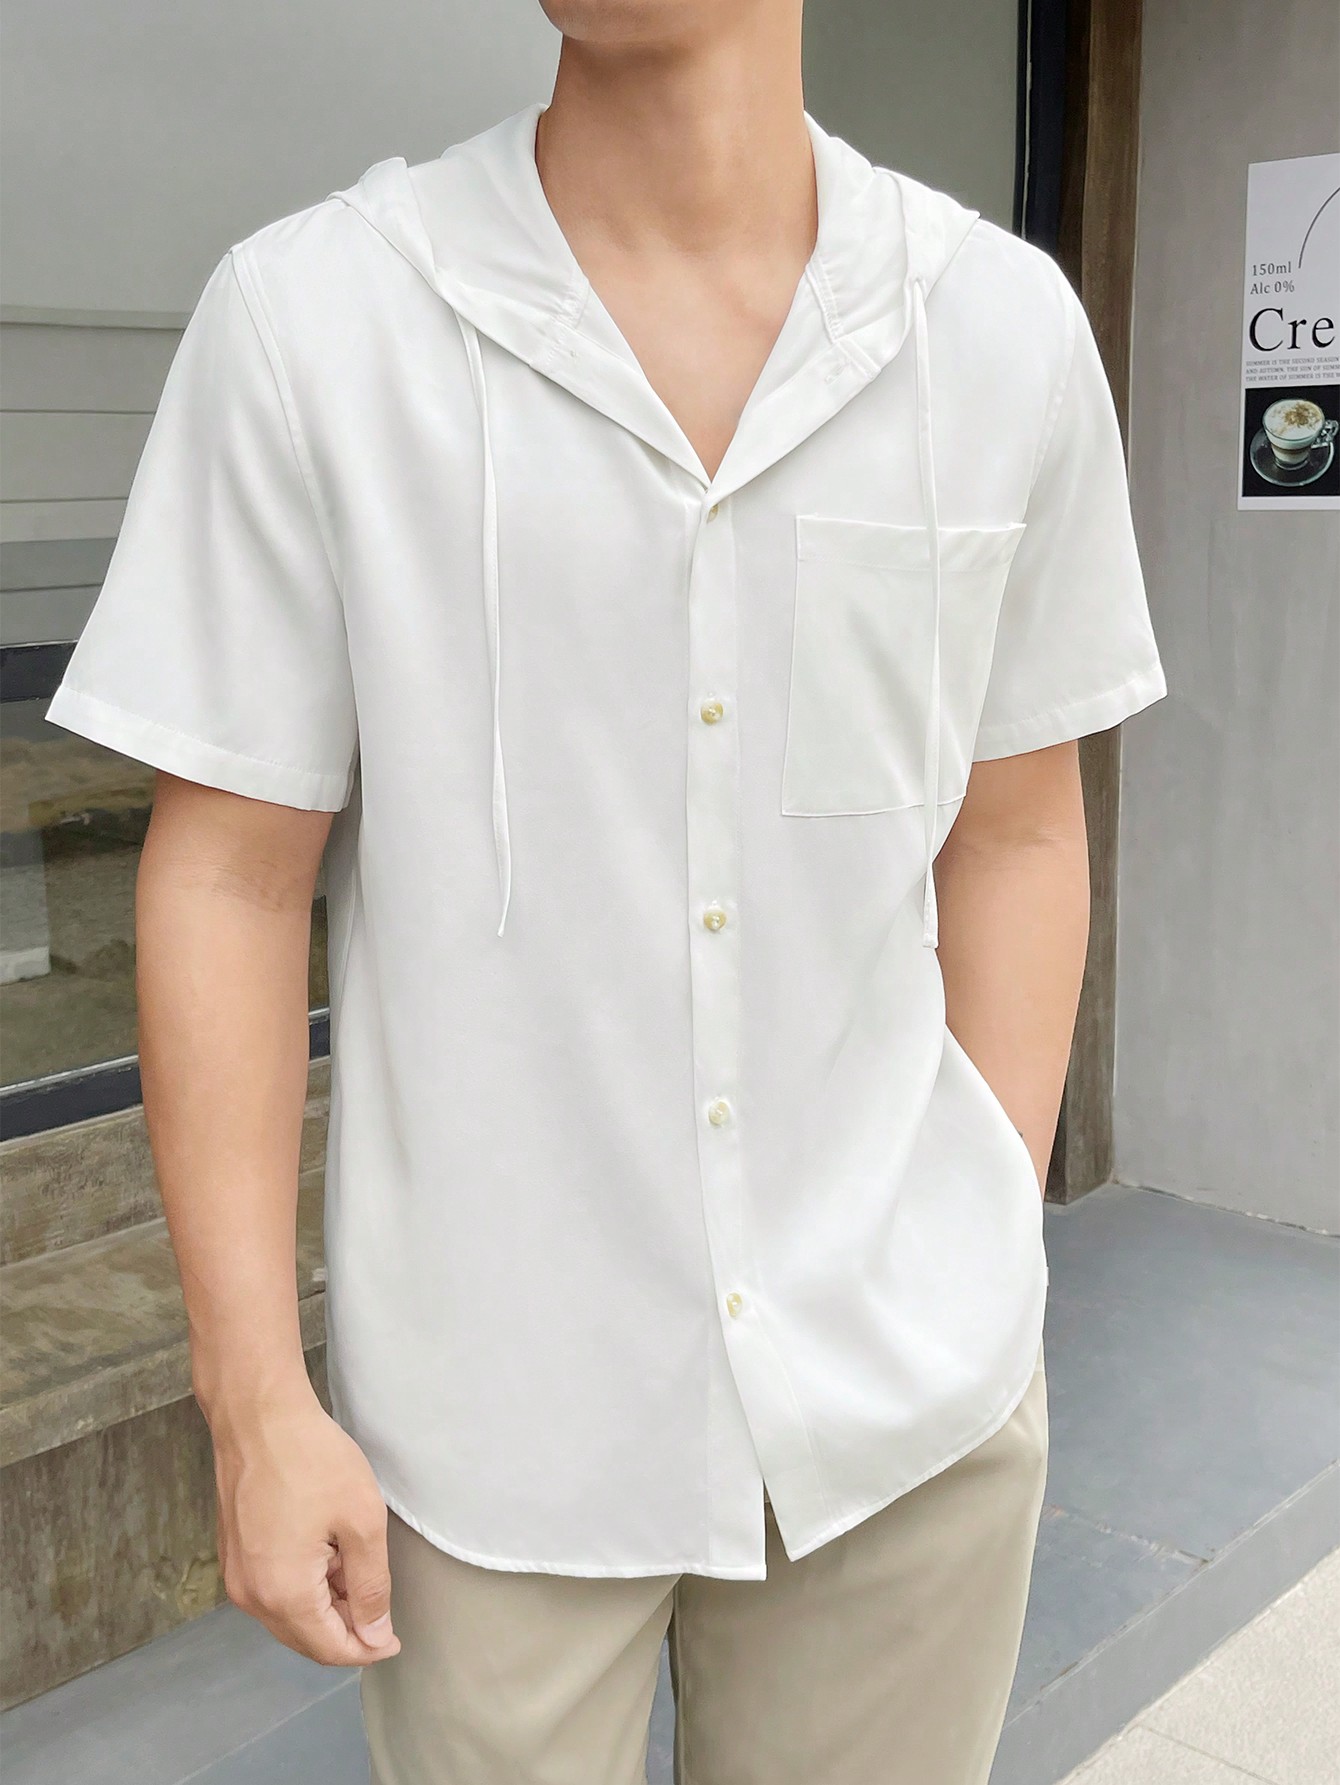 Мужская повседневная тканая рубашка с капюшоном и короткими рукавами Manfinity Hypemode, белый мужская повседневная гавайская рубашка винтажная гавайская пляжная крутая повседневная рубашка оверсайз с короткими рукавами и забавным